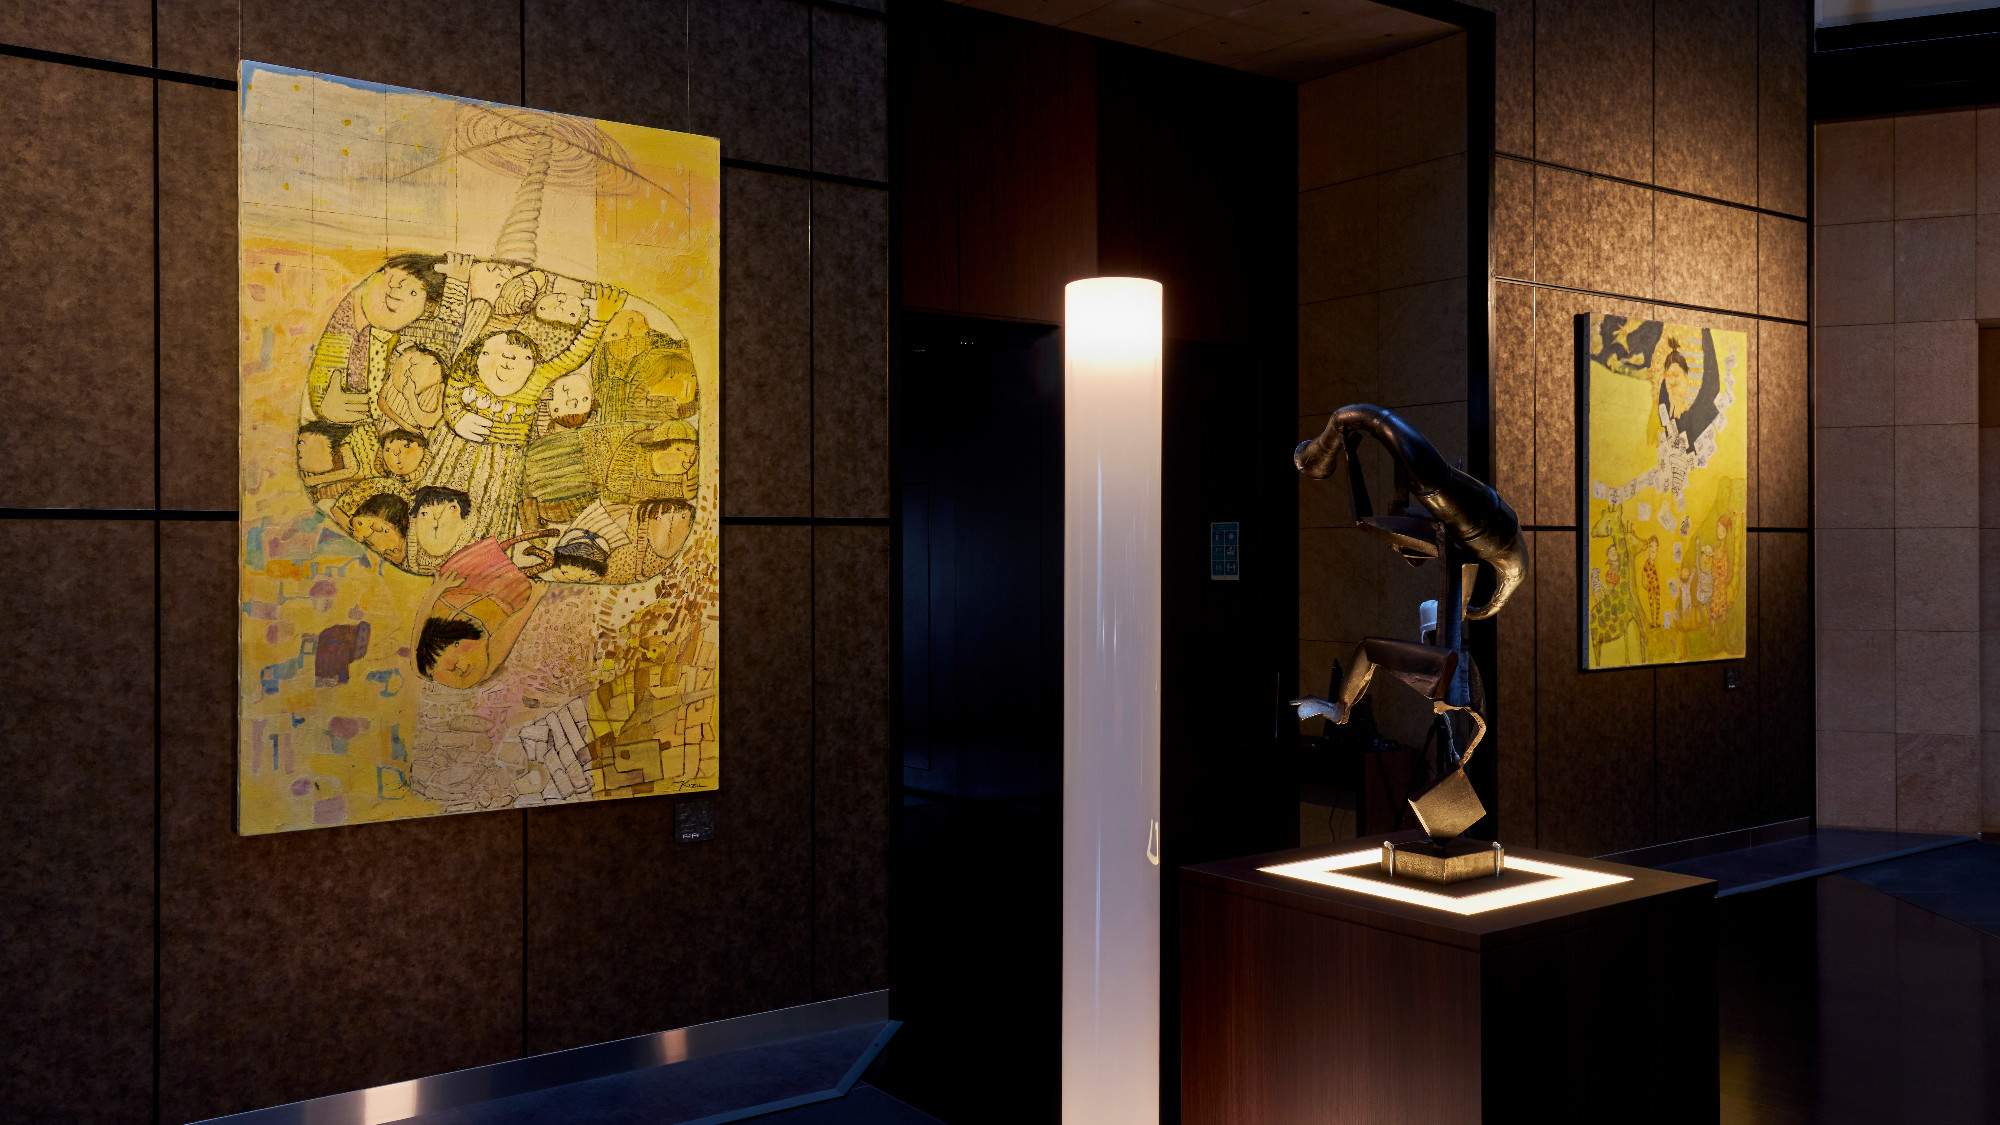 【アート展示】館内には400点以上のアート作品を展示。 